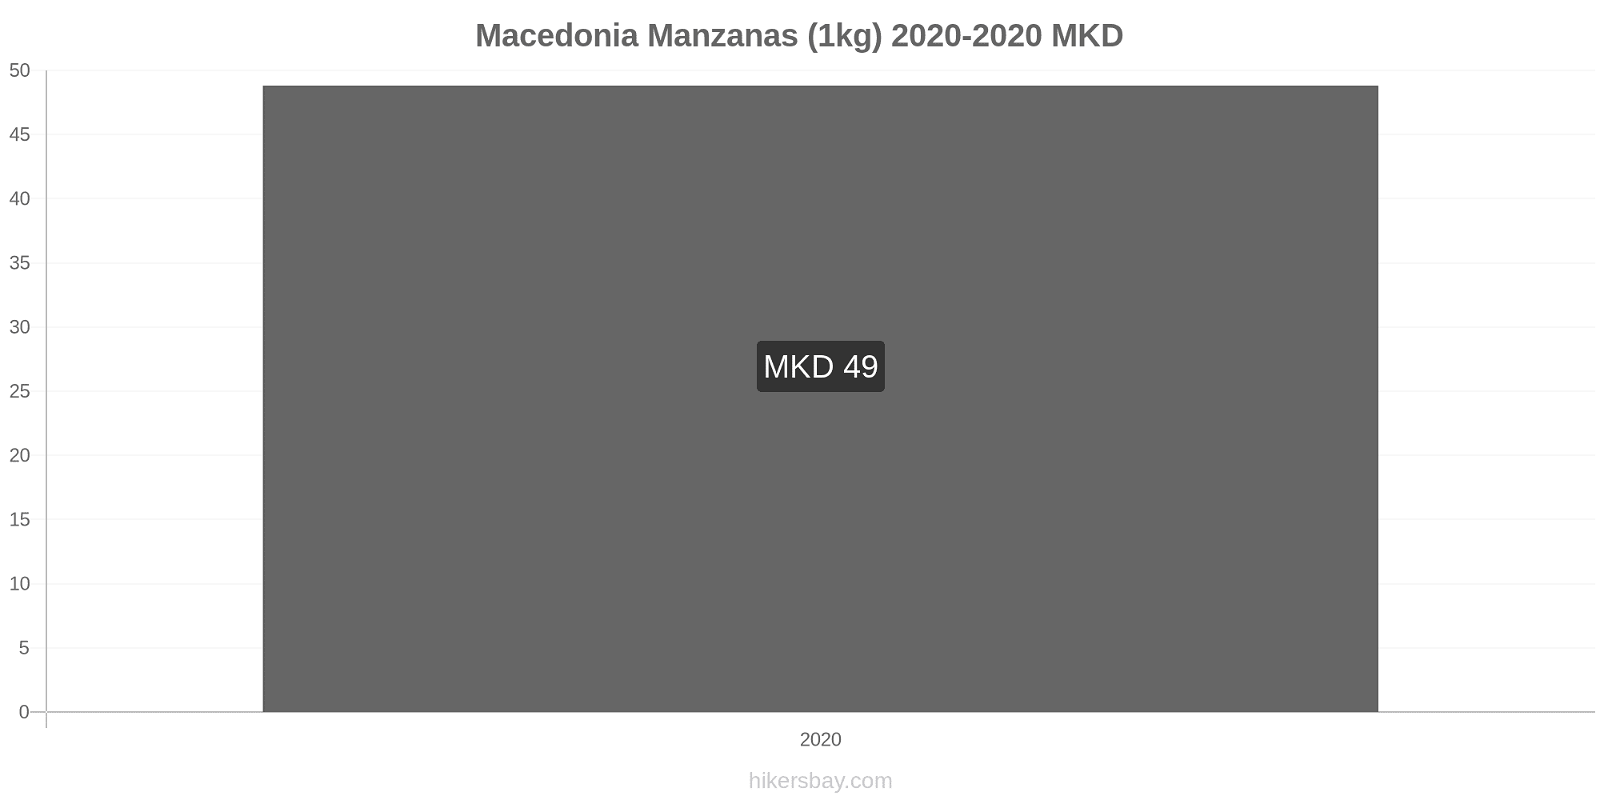 Macedonia cambios de precios Manzanas (1kg) hikersbay.com